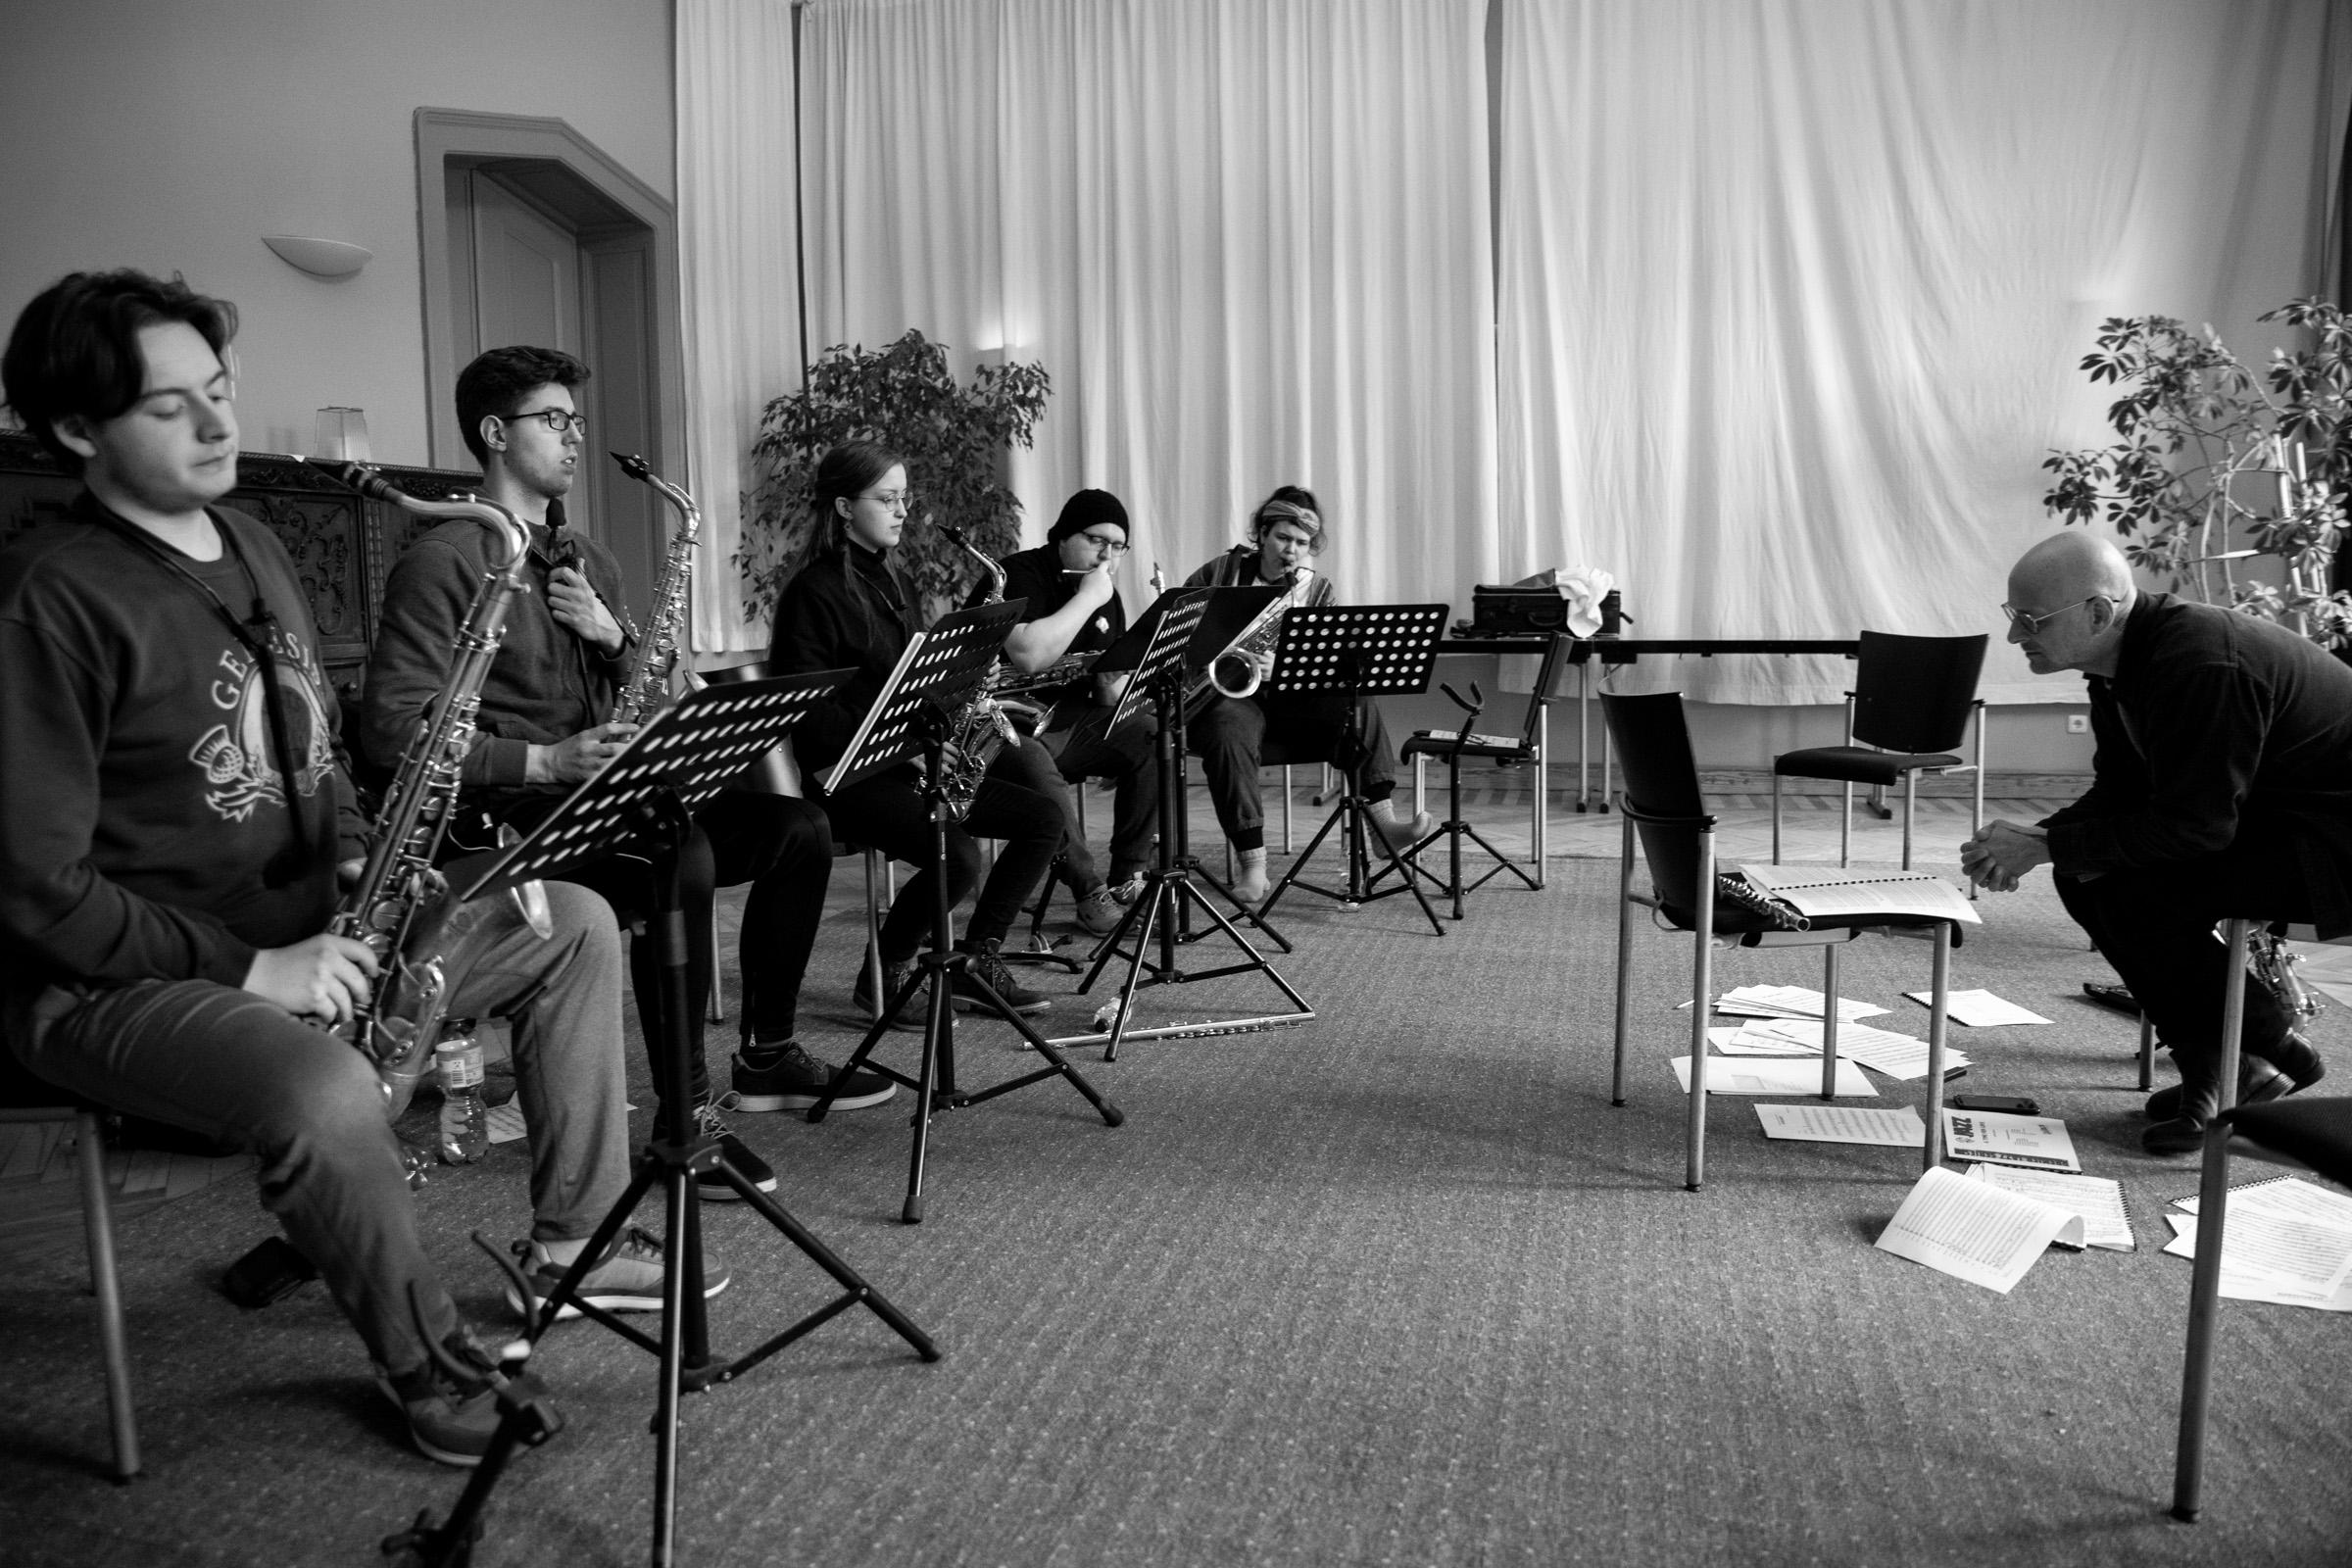 Saxofonistinnen und Saxofonisten während der Sectionprobe bei der LaJJazzO-Probenfahrt auf Schloss Kröchlendorff